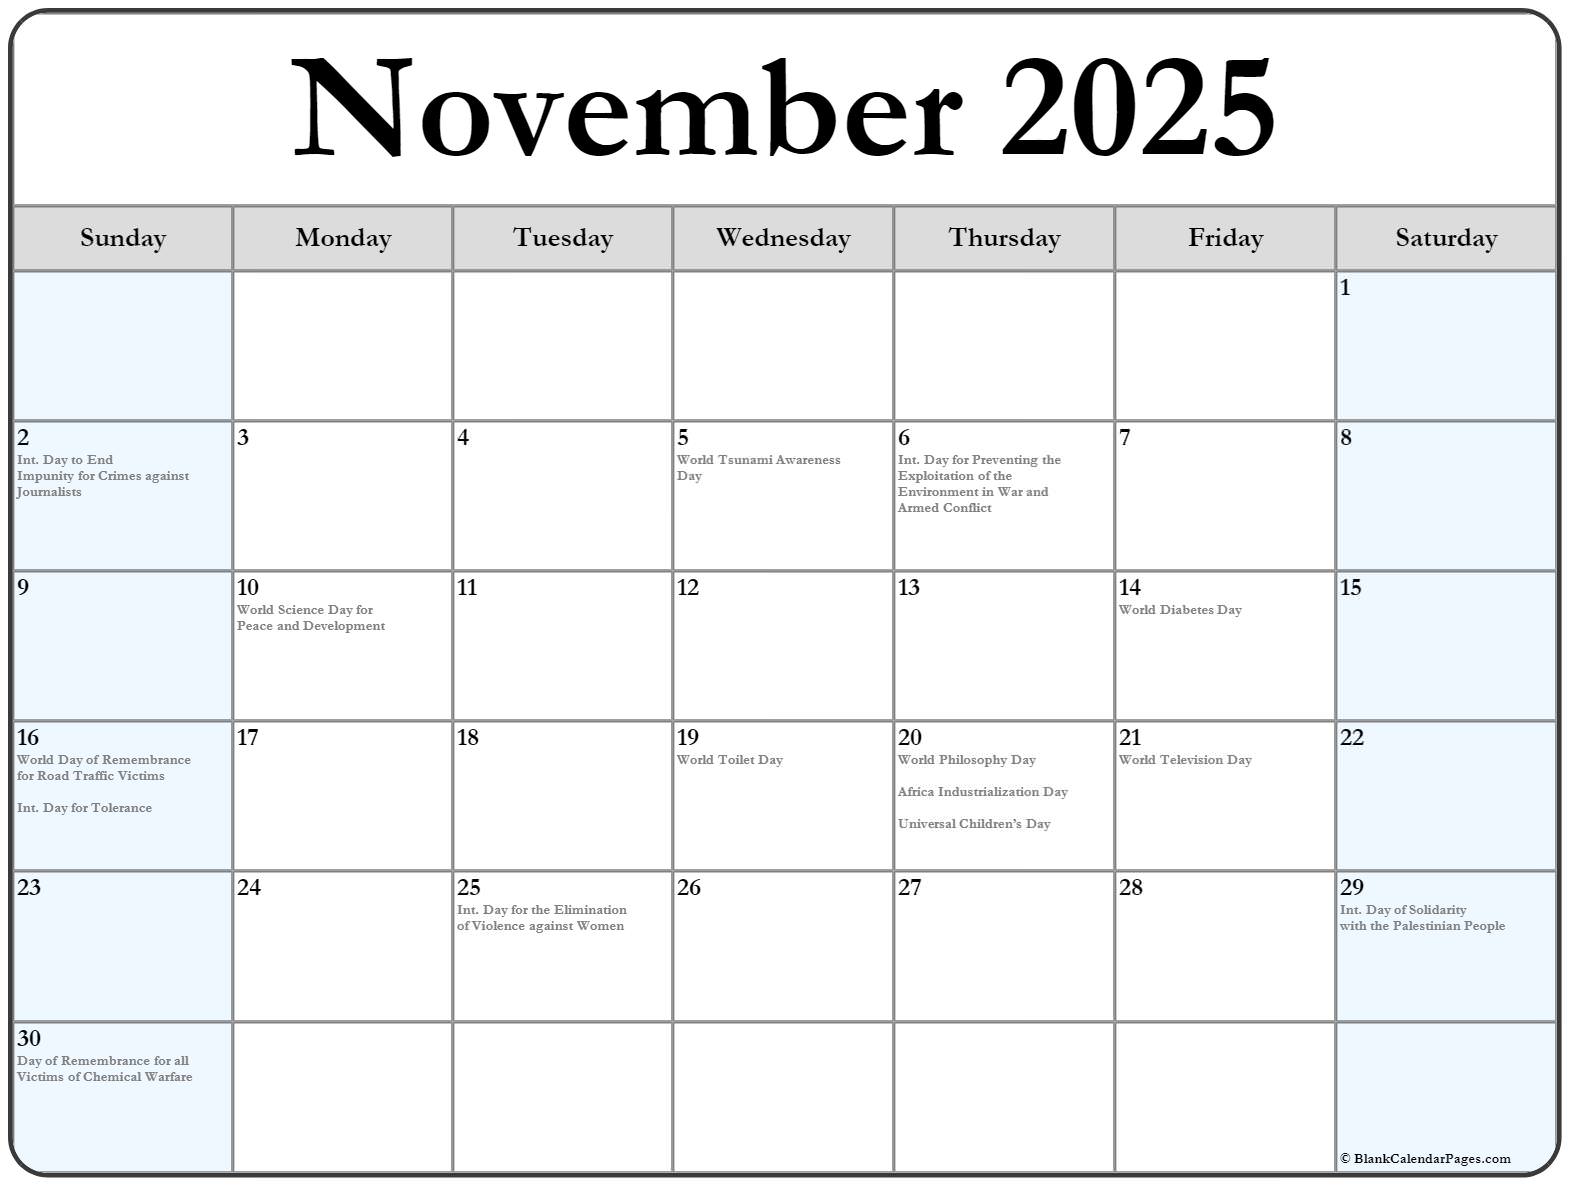 Декабрь 2023 что происходит. Календарь декабрь 2023. Календарь на декабрь 2023 года. Ноябрь декабрь 2023. Календарь на 2023 декабрь месяц с праздниками.